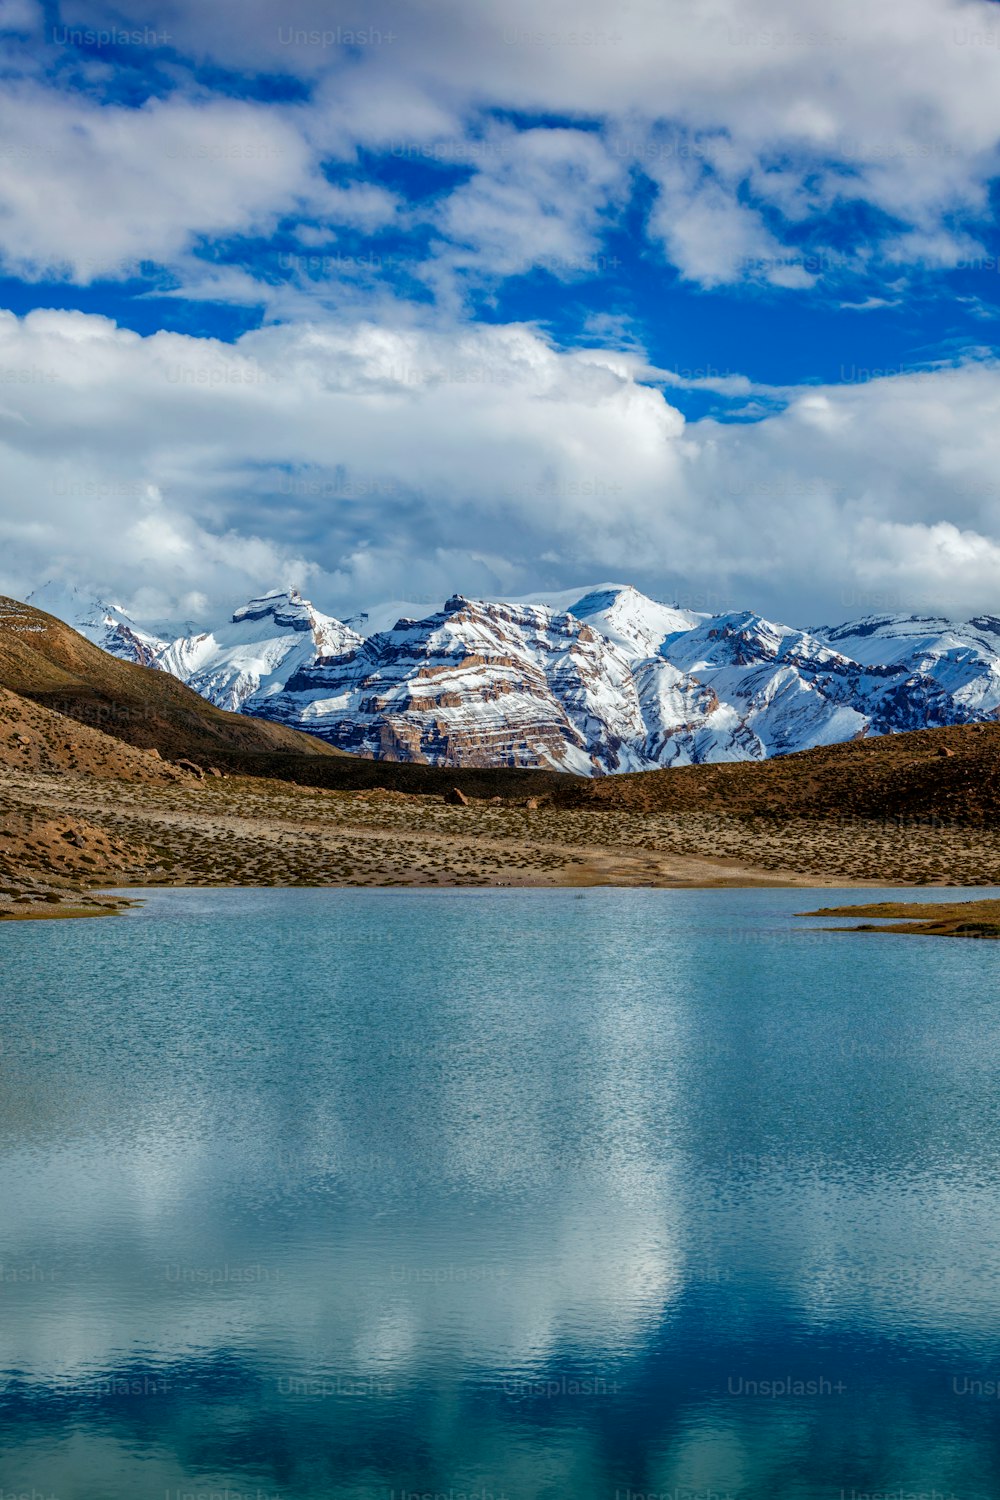 Lago Dhankar en el Himalaya. Valle de Spiti, Himachal Pradesh, India